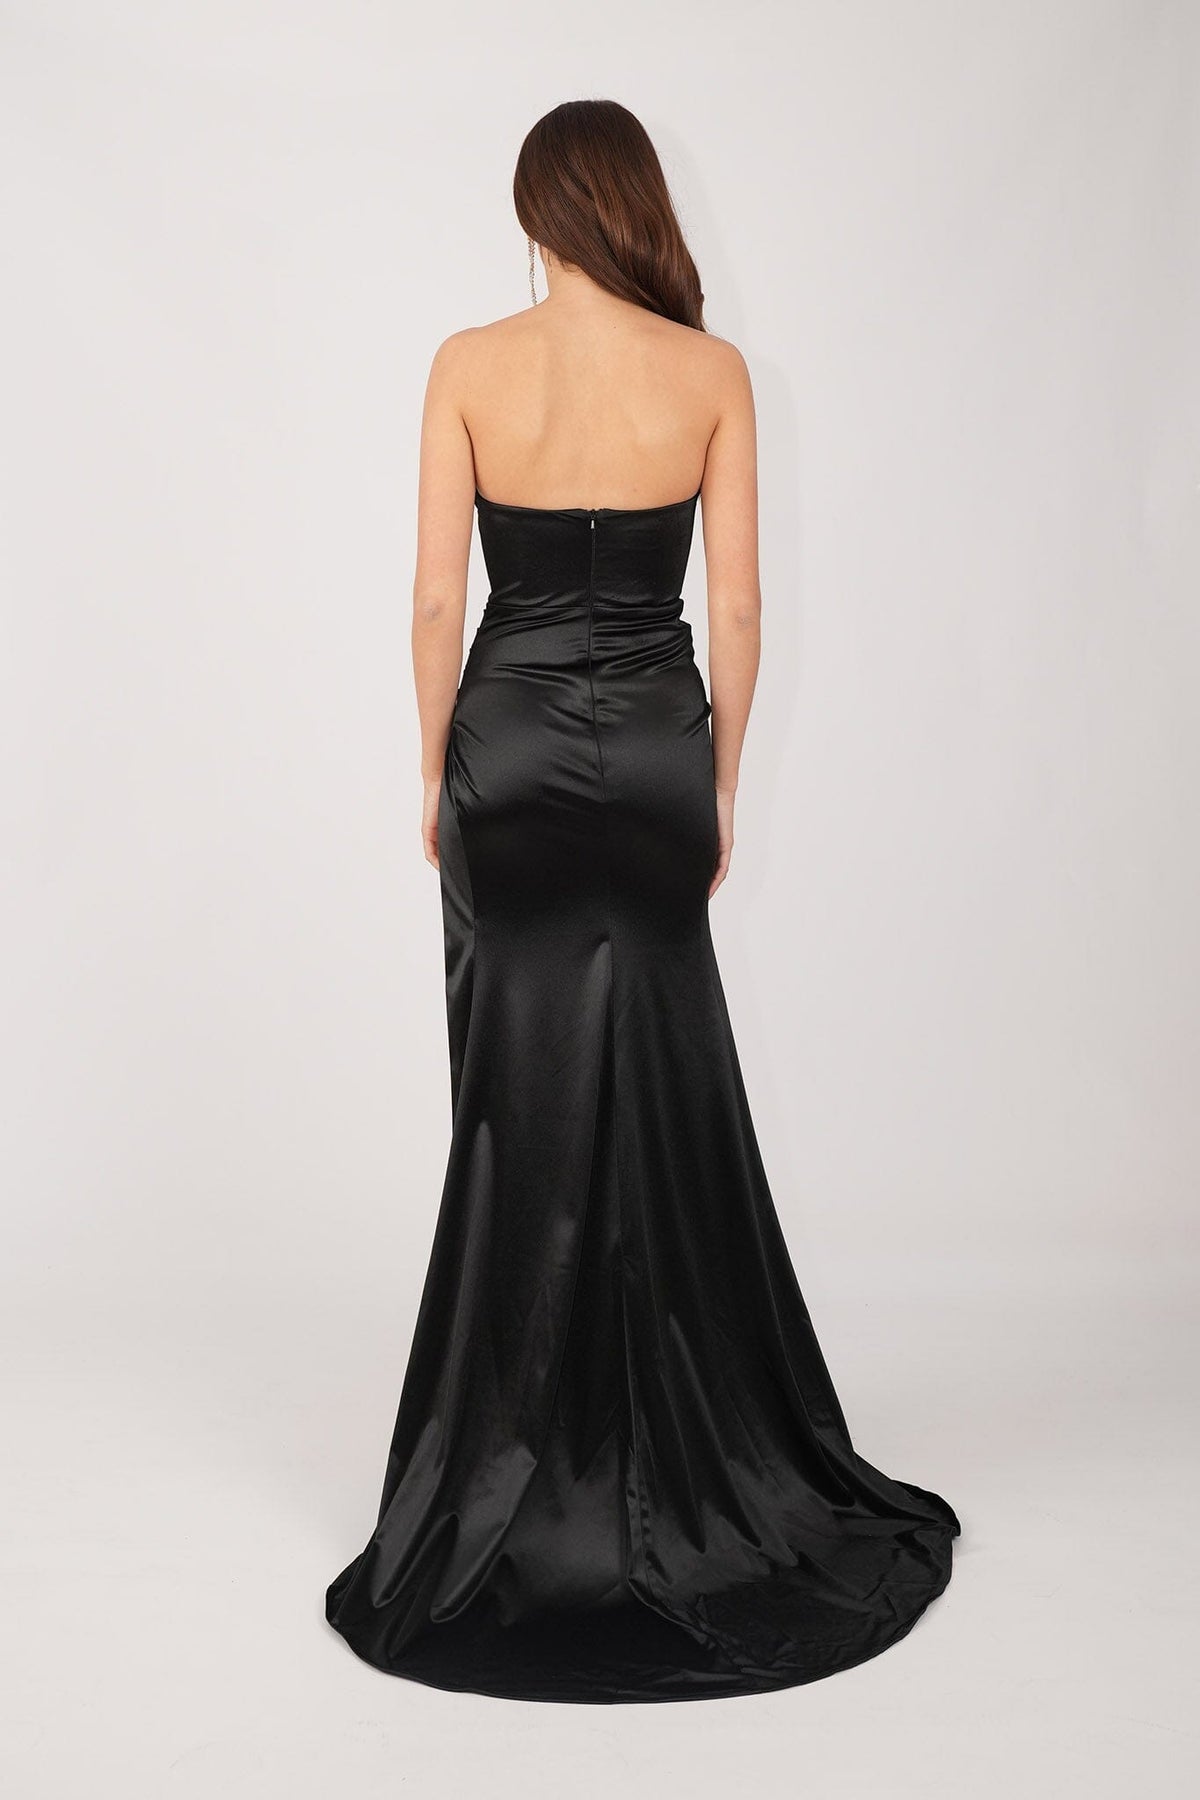 CRYSTAL Corset Gown - Black – Noodz Boutique